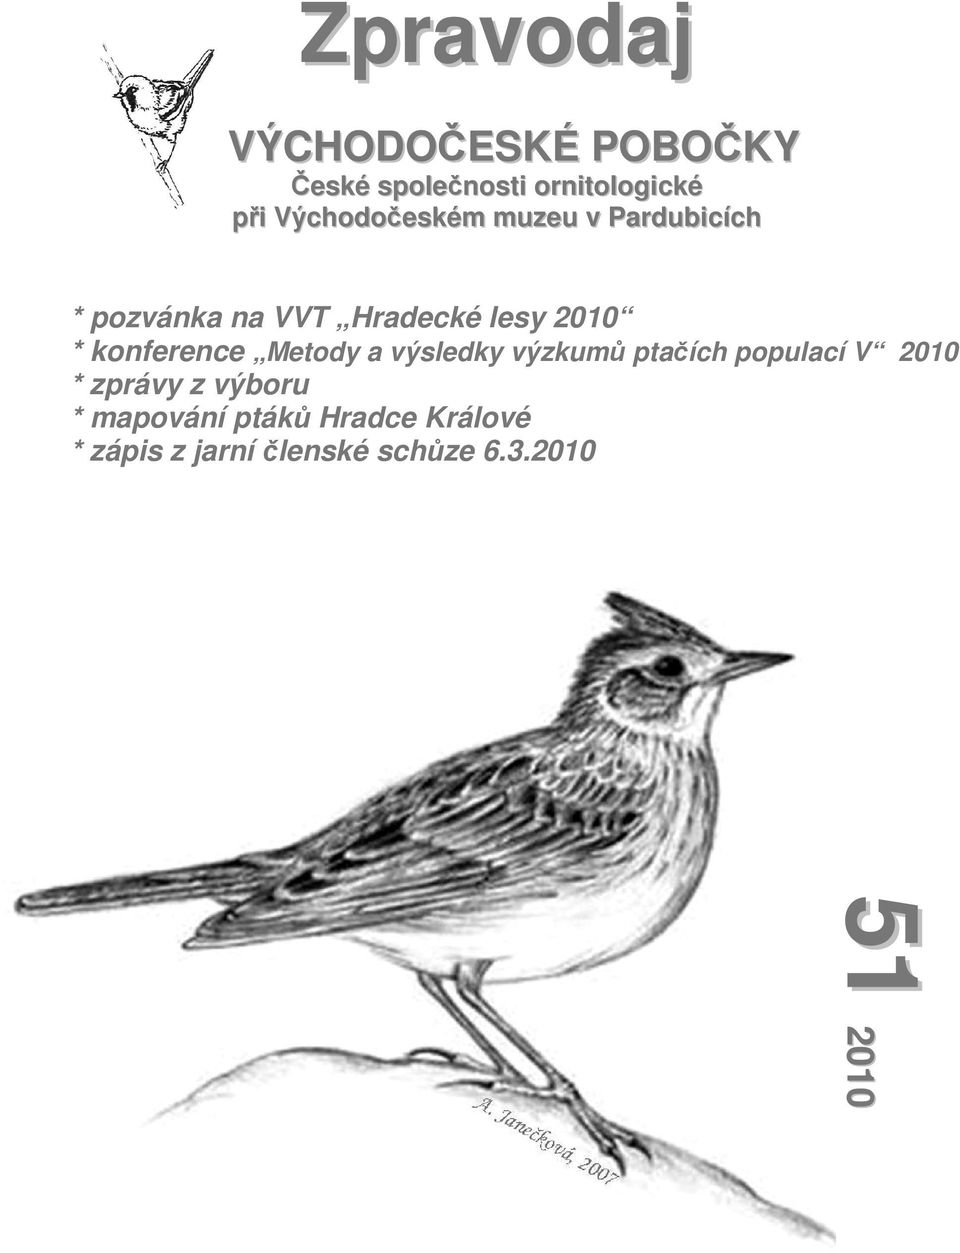 konference Metody a výsledky výzkumů ptačích populací V 2010 * zprávy z